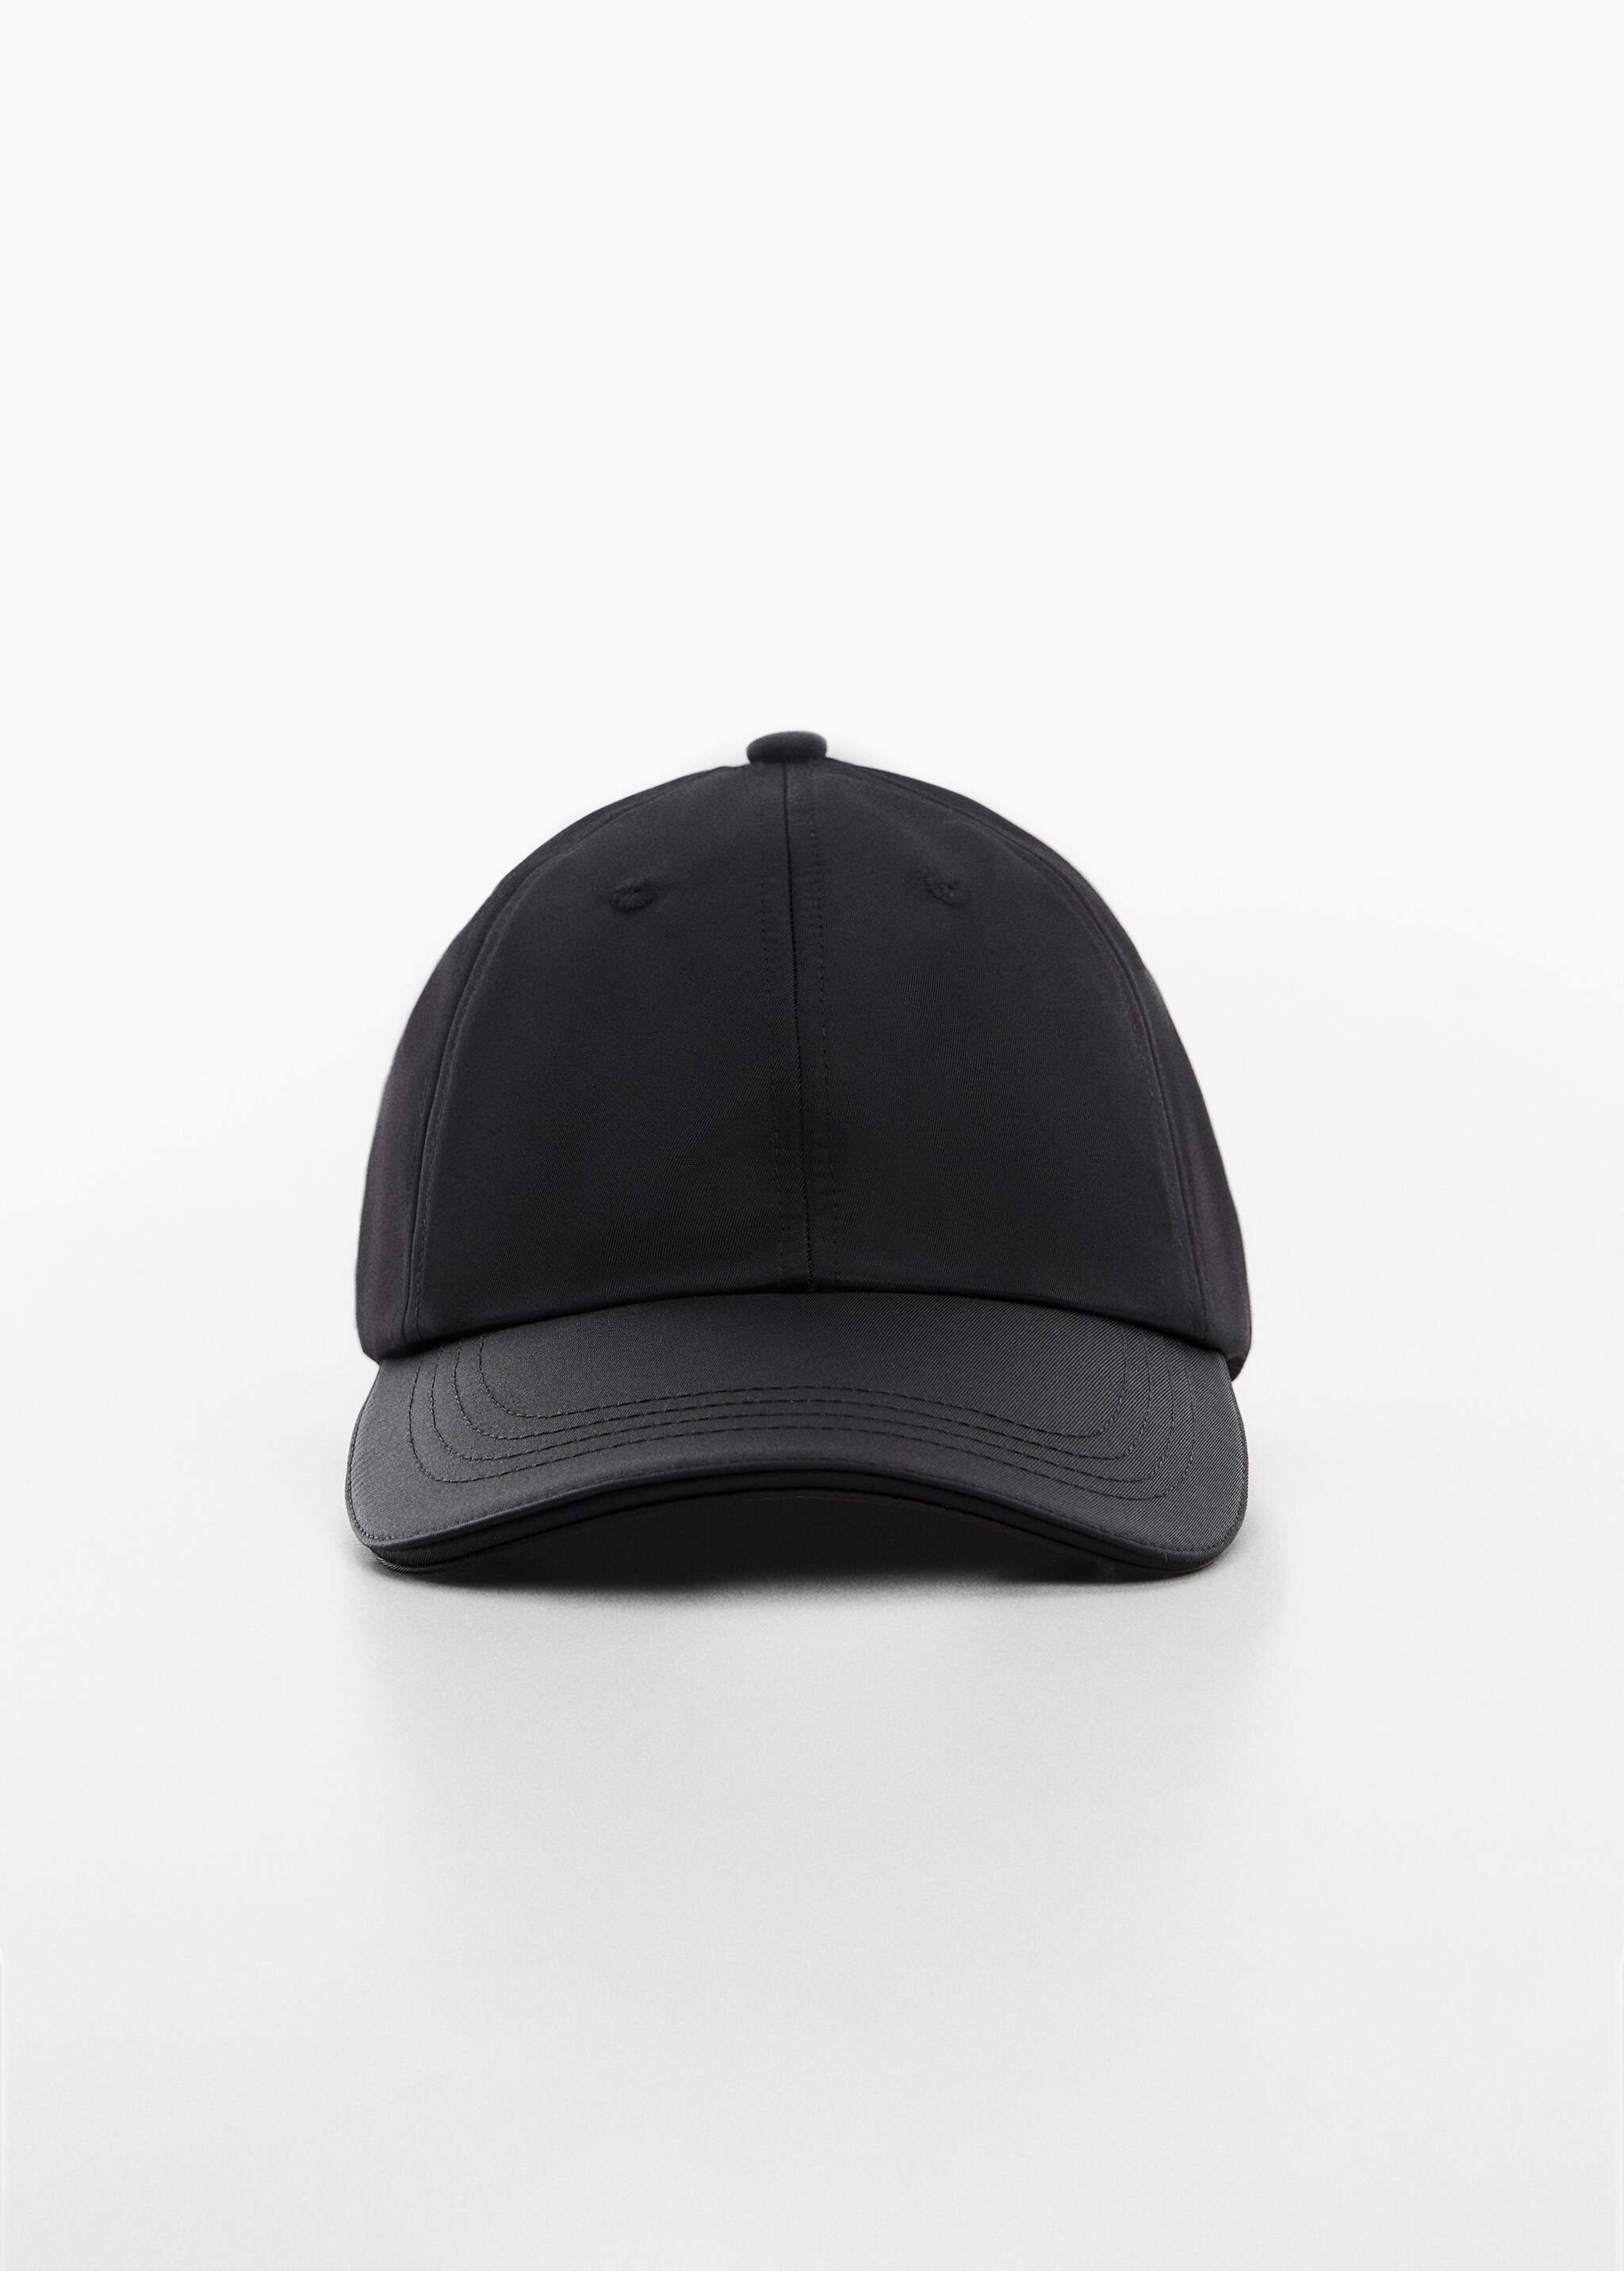 Soft visor cap - Medium plane